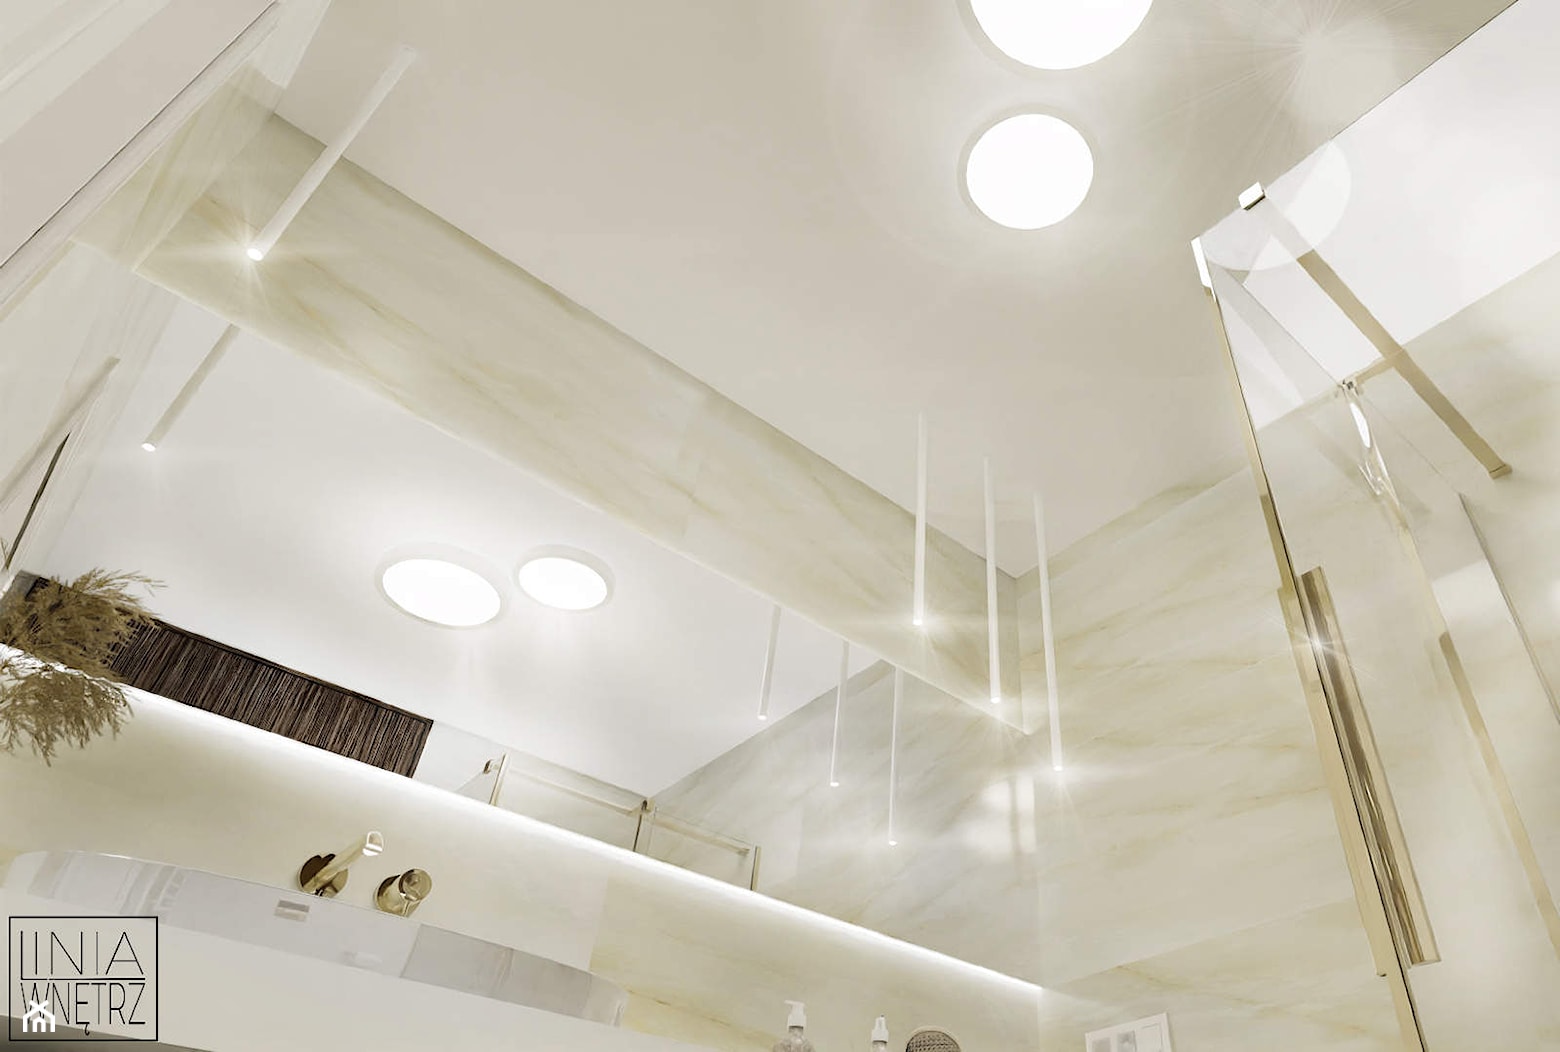 Projekt jasnej małej łazienki ze złotymi dodatkami w domu jednorodzinnym z dużym podświetlanym lustrem i dużym blatem pod umywalką - zdjęcie od LINIA WNĘTRZ - PROJEKTOWANIE WNĘTRZ DOMÓW I MIESZKAŃ - Homebook